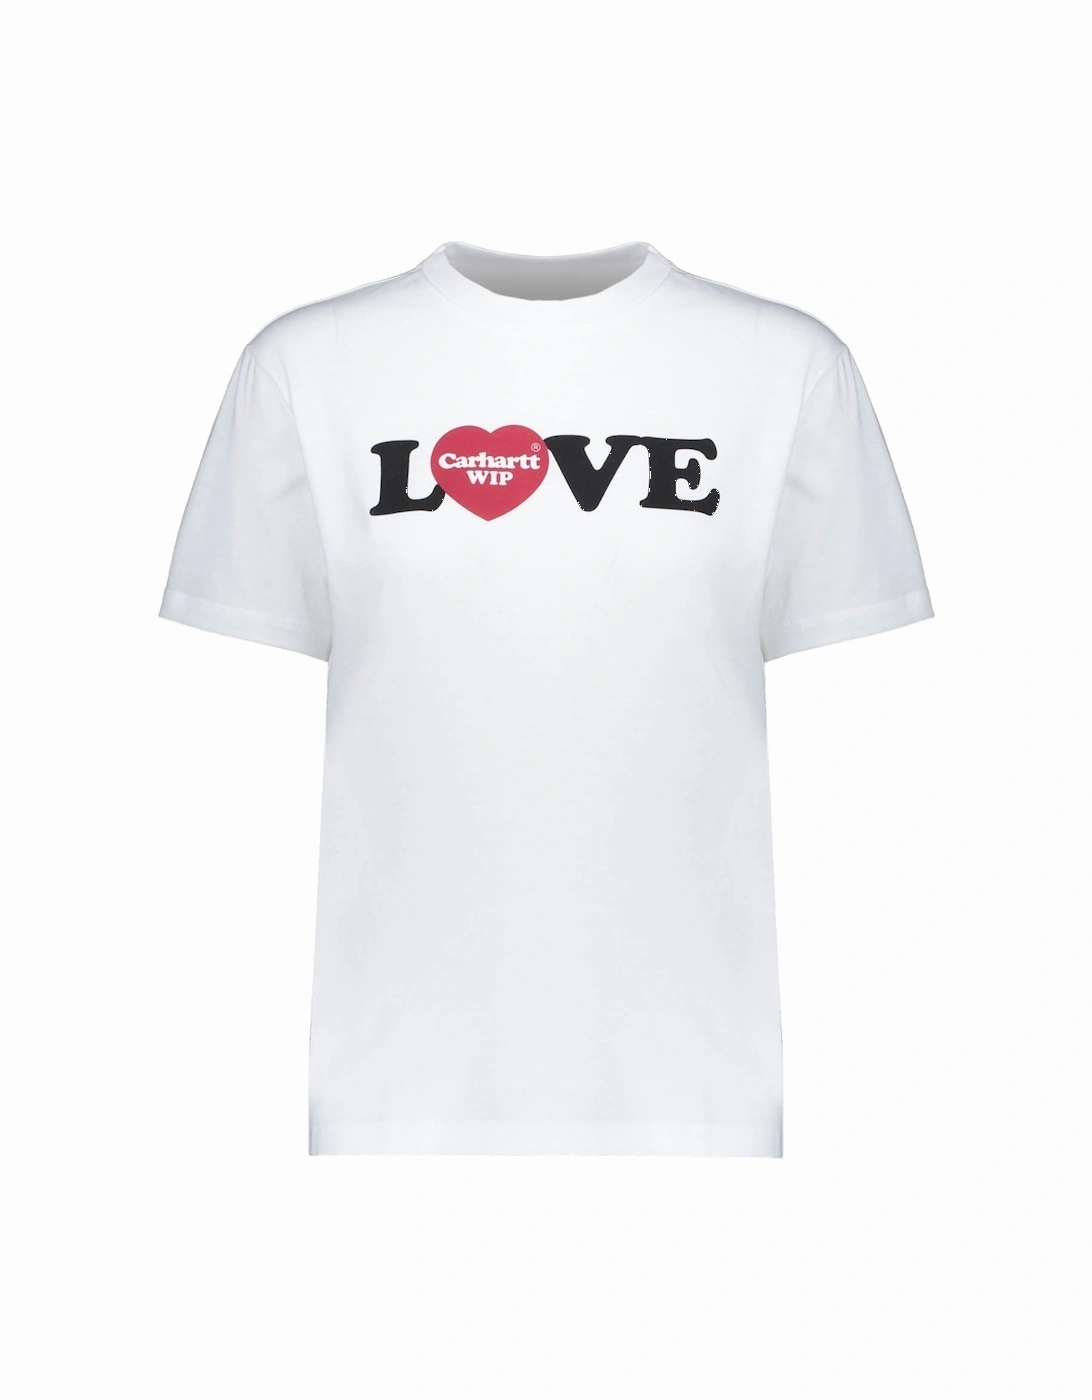 S/S Love T-shirt - White, 3 of 2